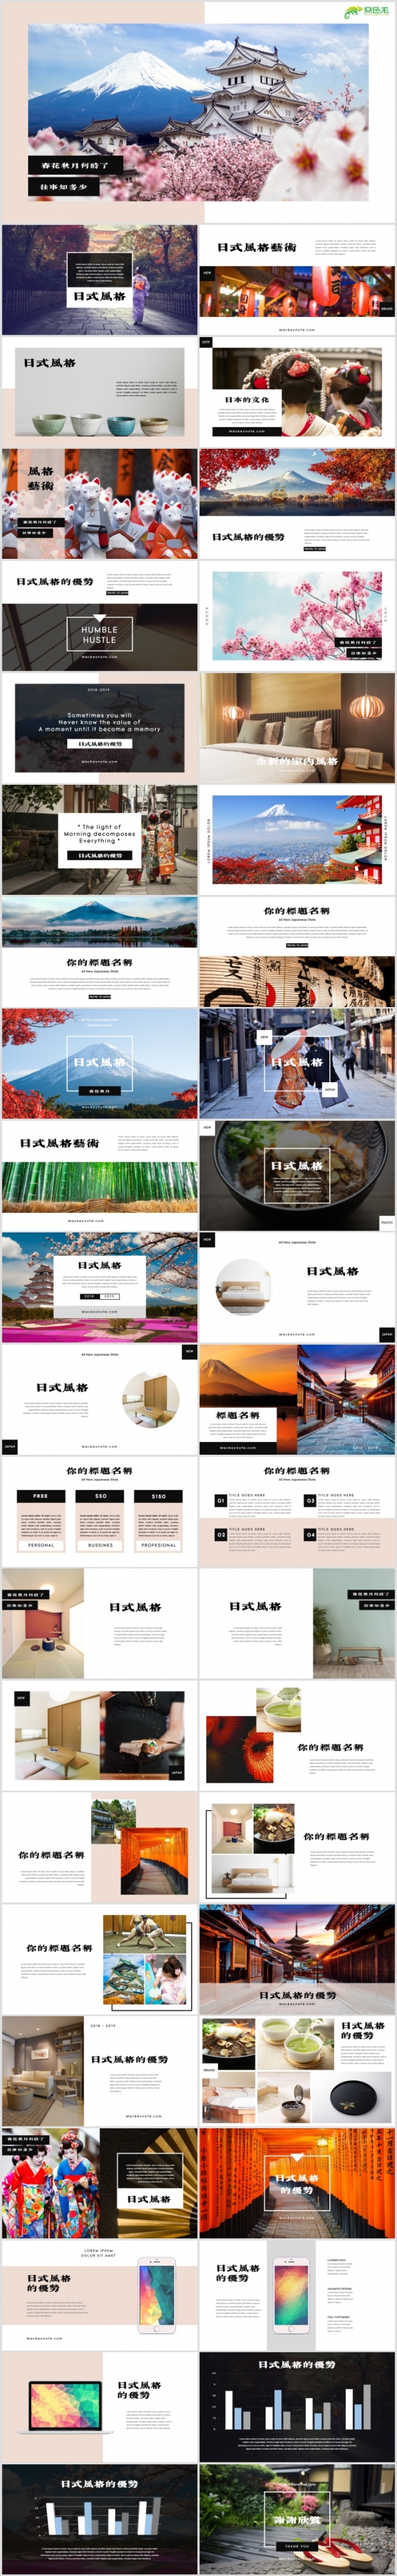 【狂人作品】日式风格设计日本介绍文化宣传PPT模板